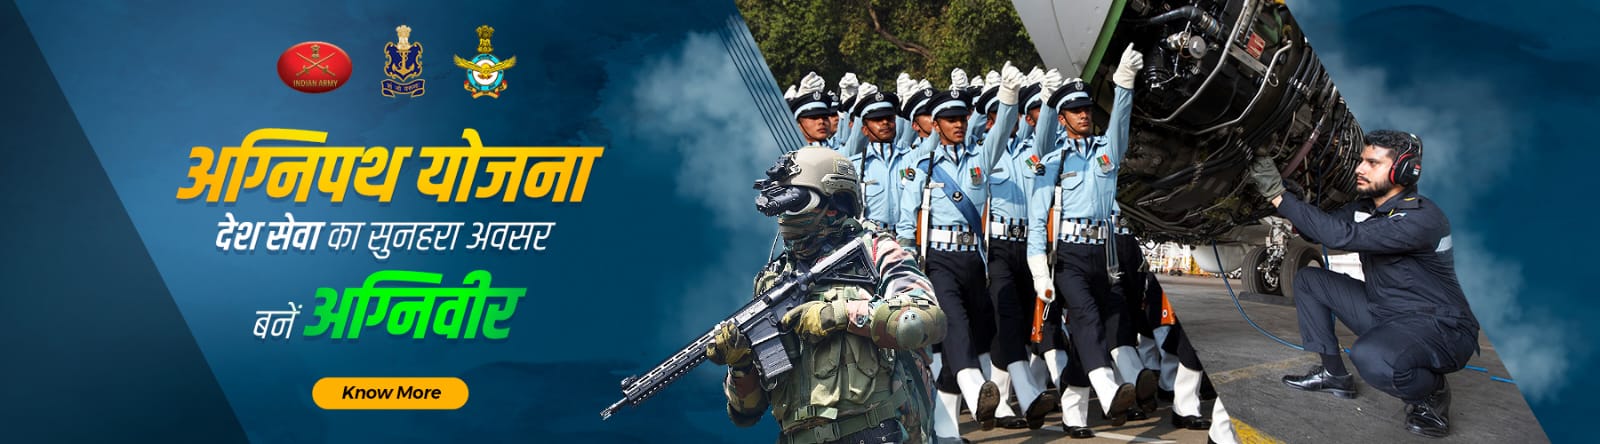 Agnipath Army recruitment banner